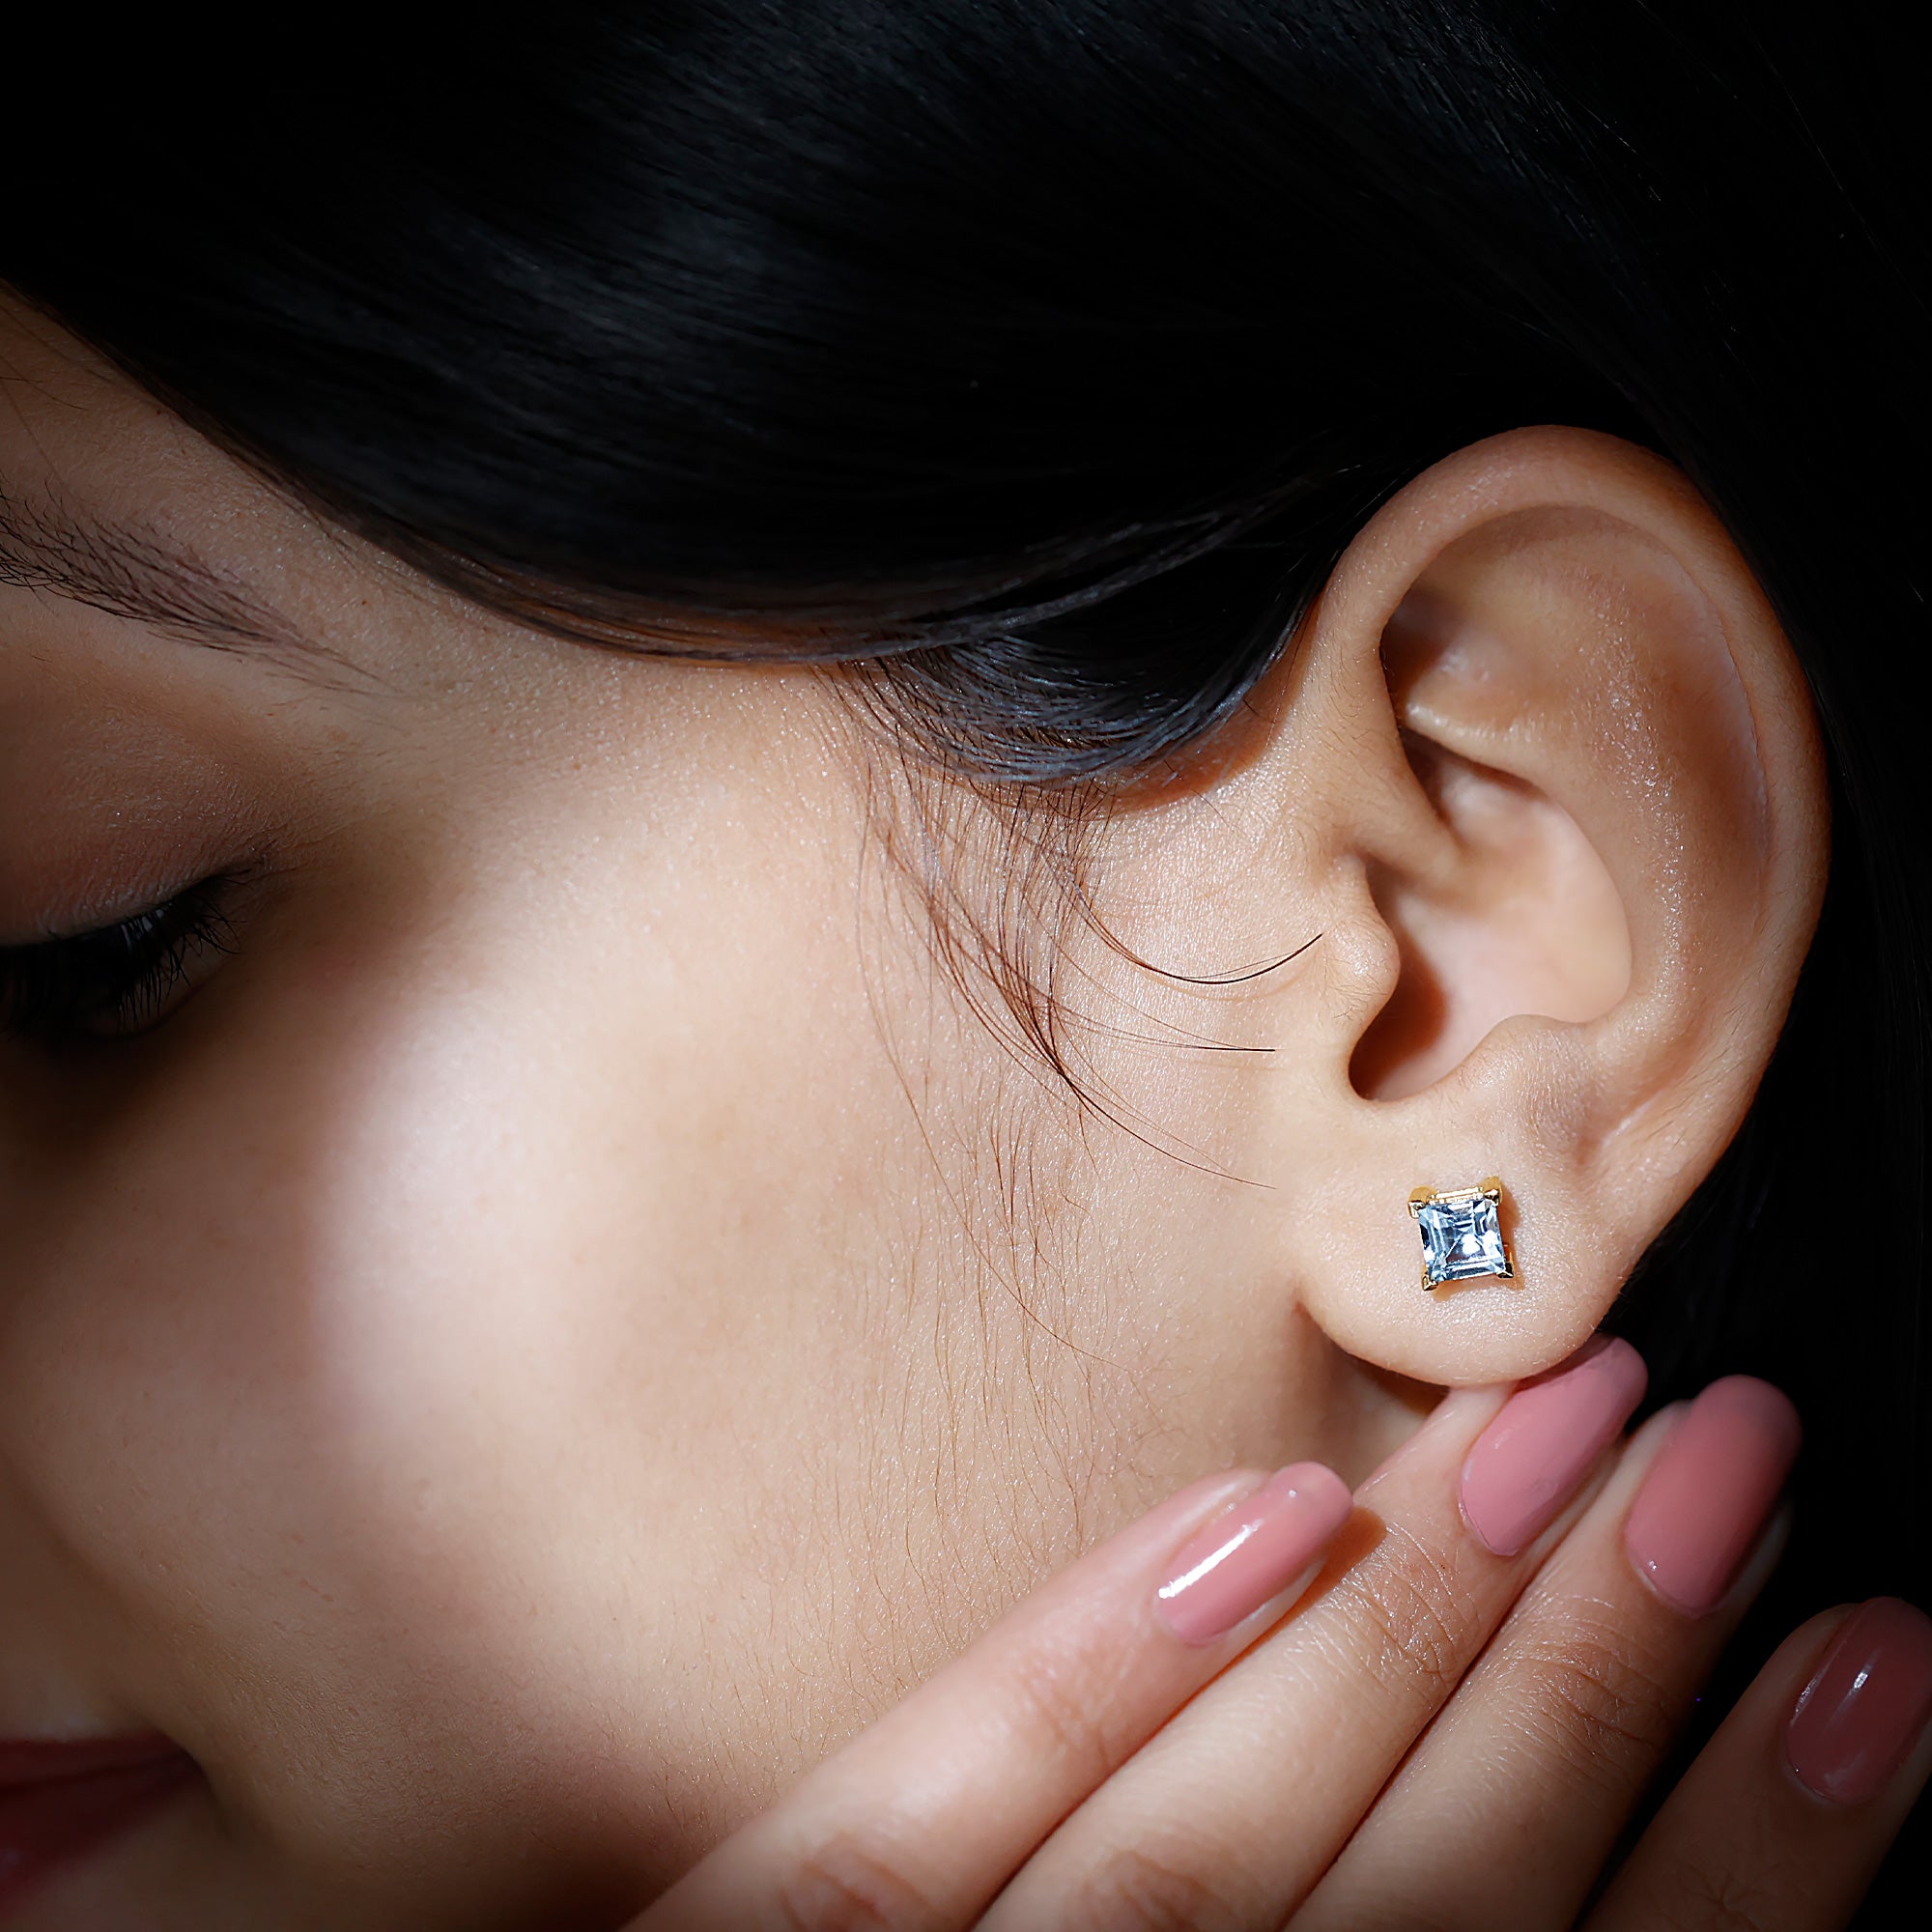 Princess Cut Aquamarine Solitaire Stud Earring Aquamarine - ( AAA ) - Quality - Rosec Jewels